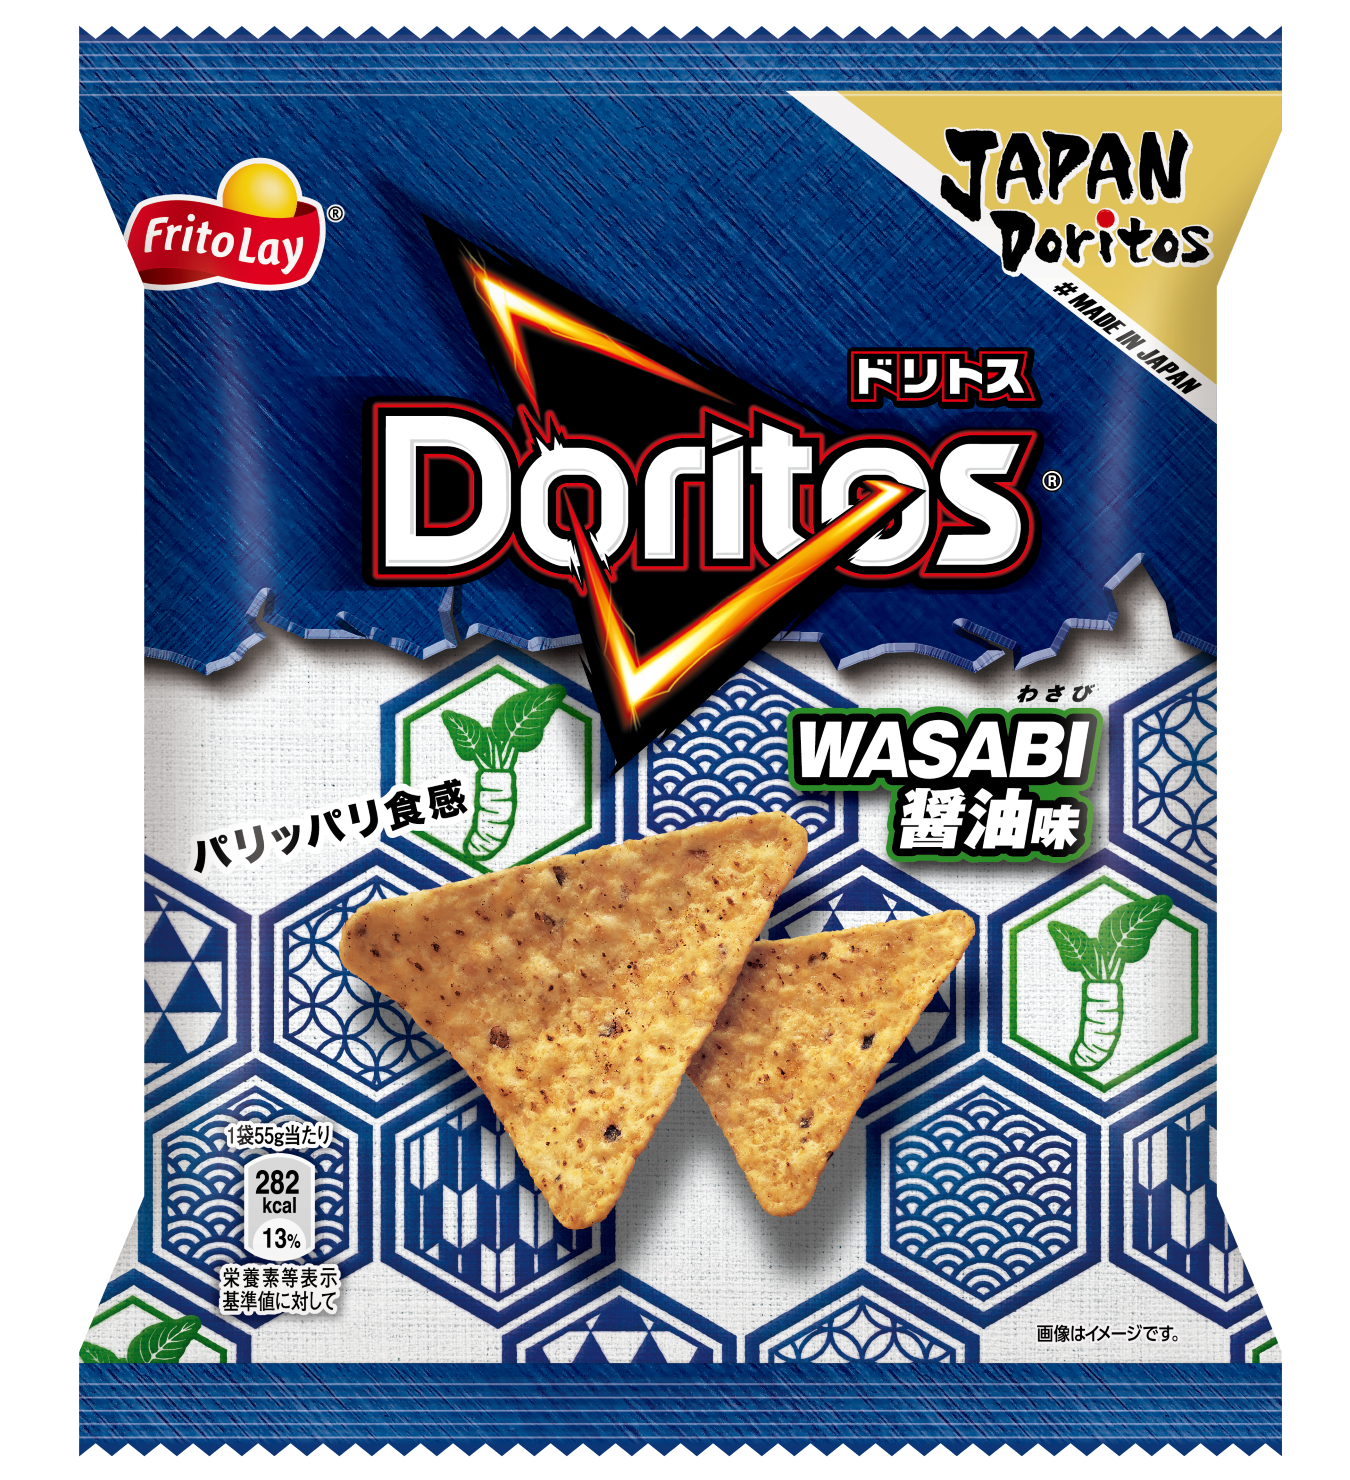 『ドリトス WASABI 醤油味』